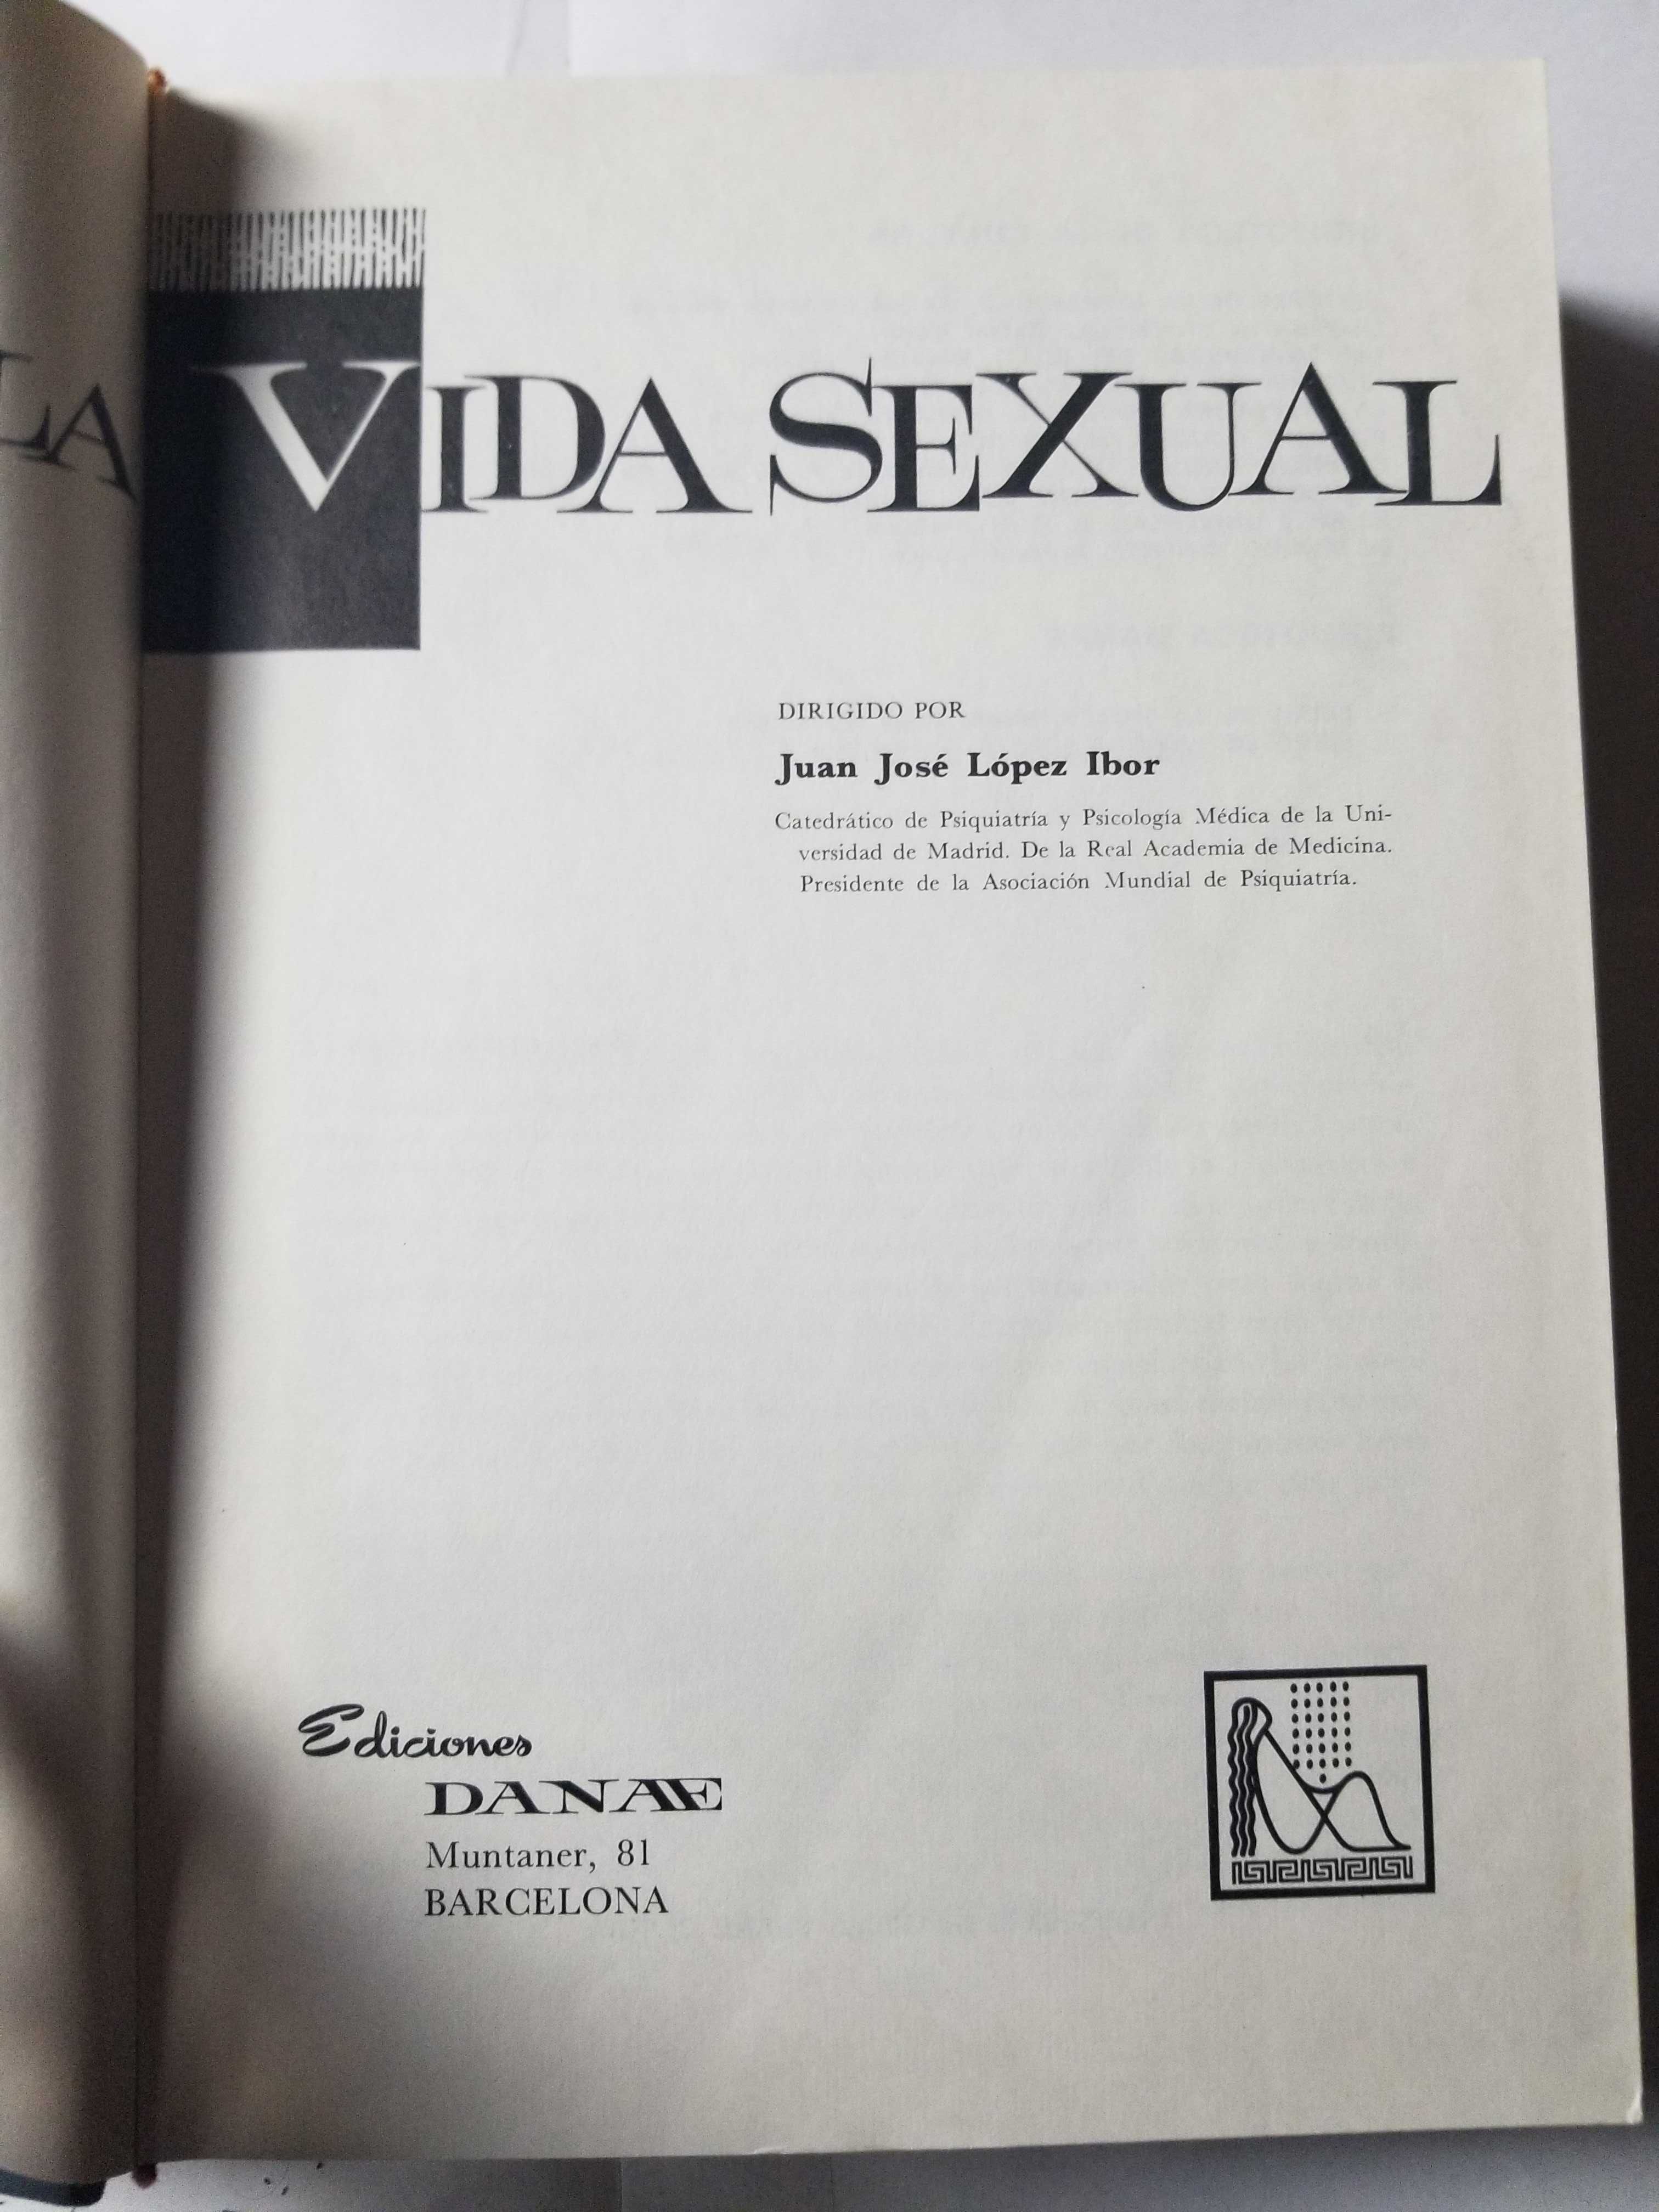 Livro - Ref CxC- Lopez Ibor - El Libro de la Vida Sexual